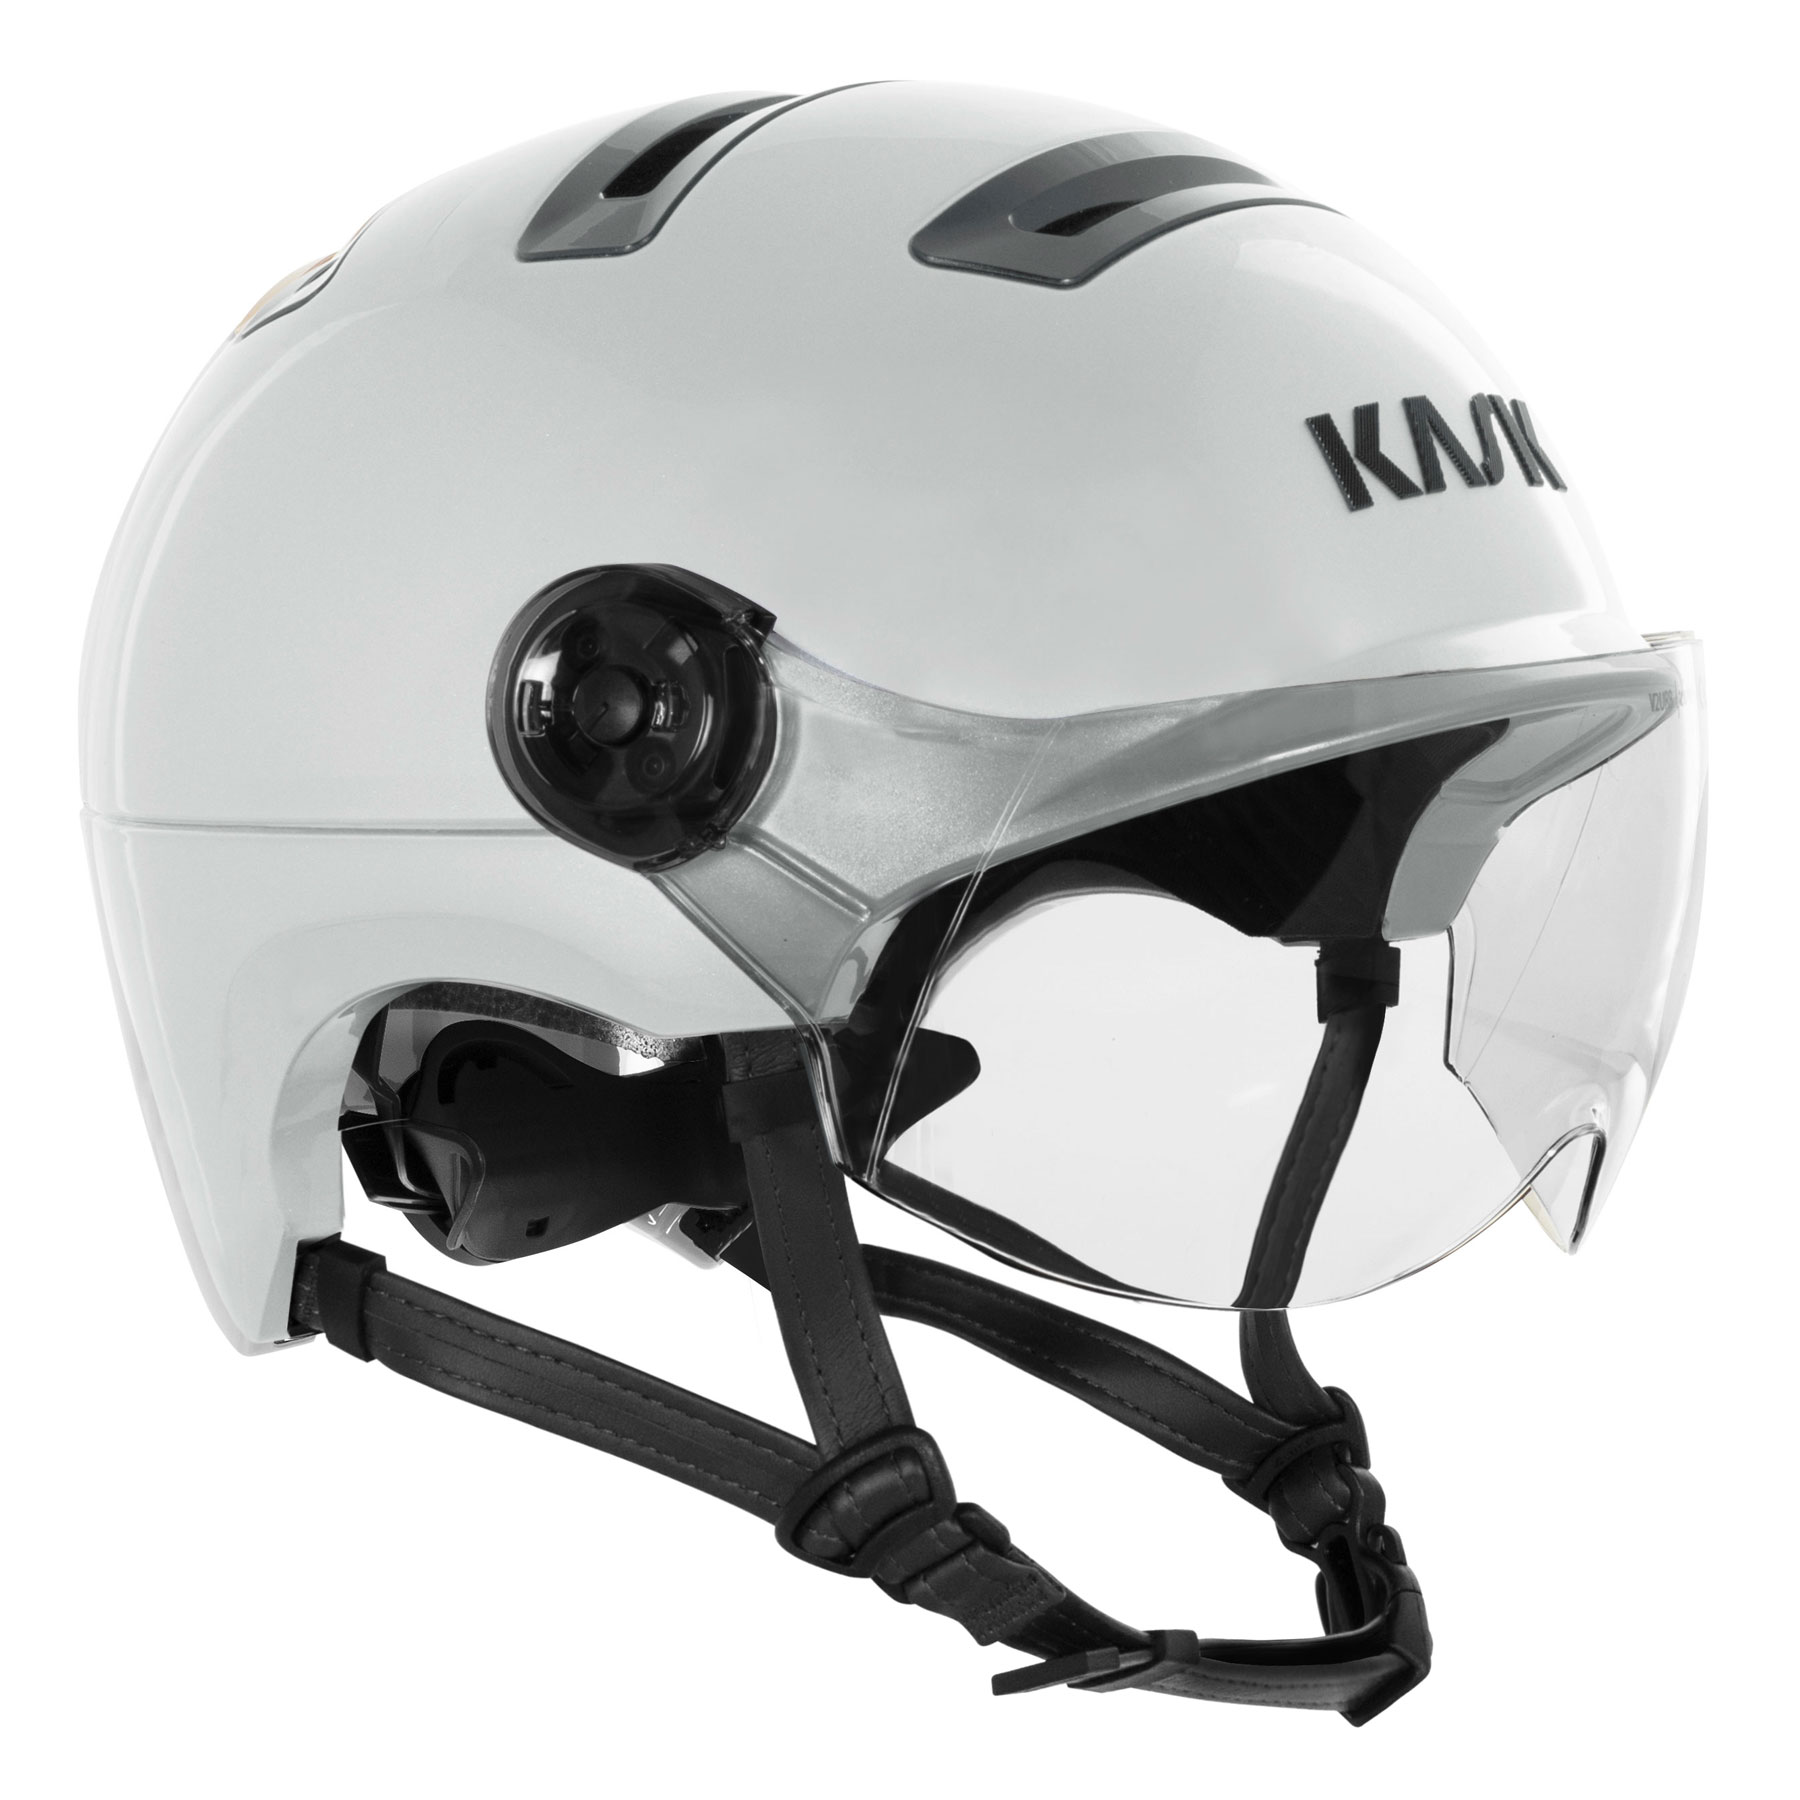 Picture of KASK Urban R WG11 Helmet - Ivory